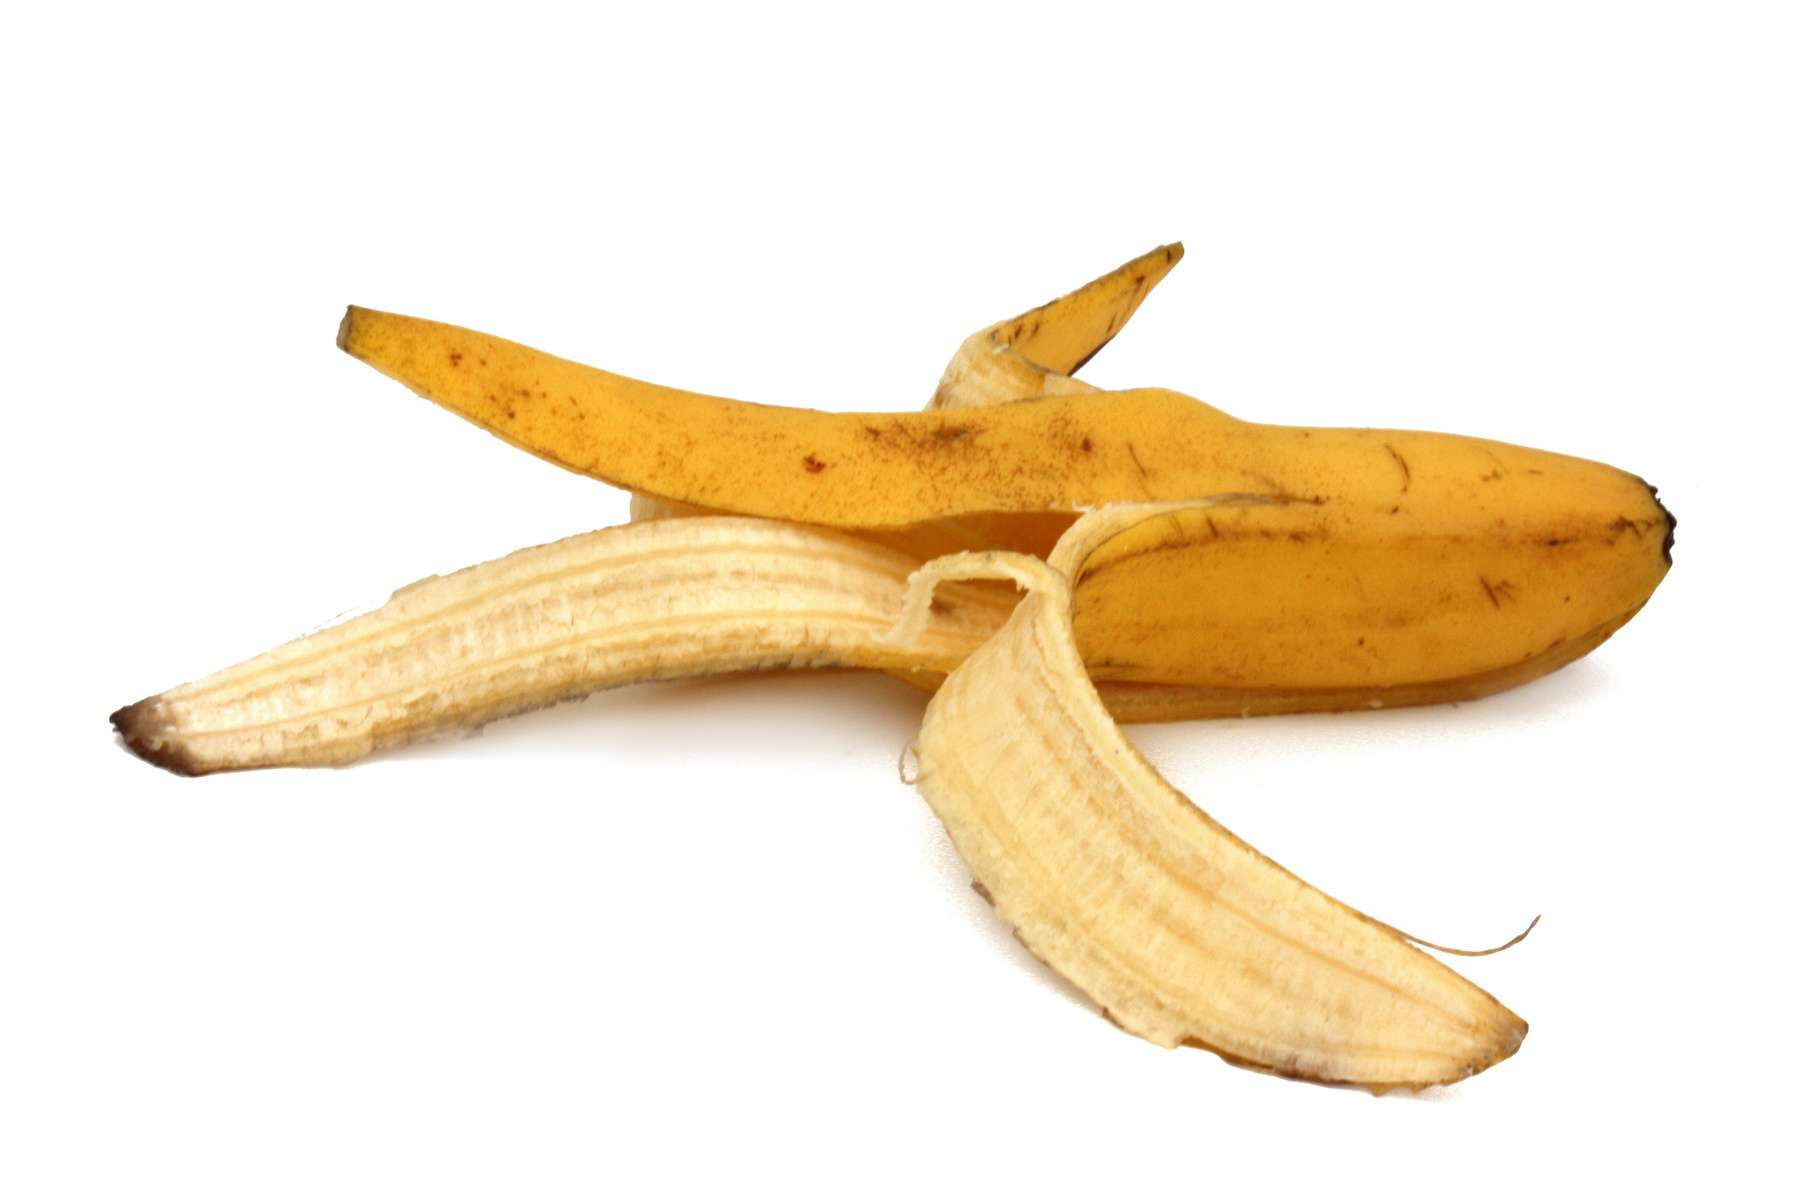 Un complément alimentaire à base de peau et d’étamines de banane a été approuvé contre l’insomnie et la dépression. © Brad Pict, Adobe Stock